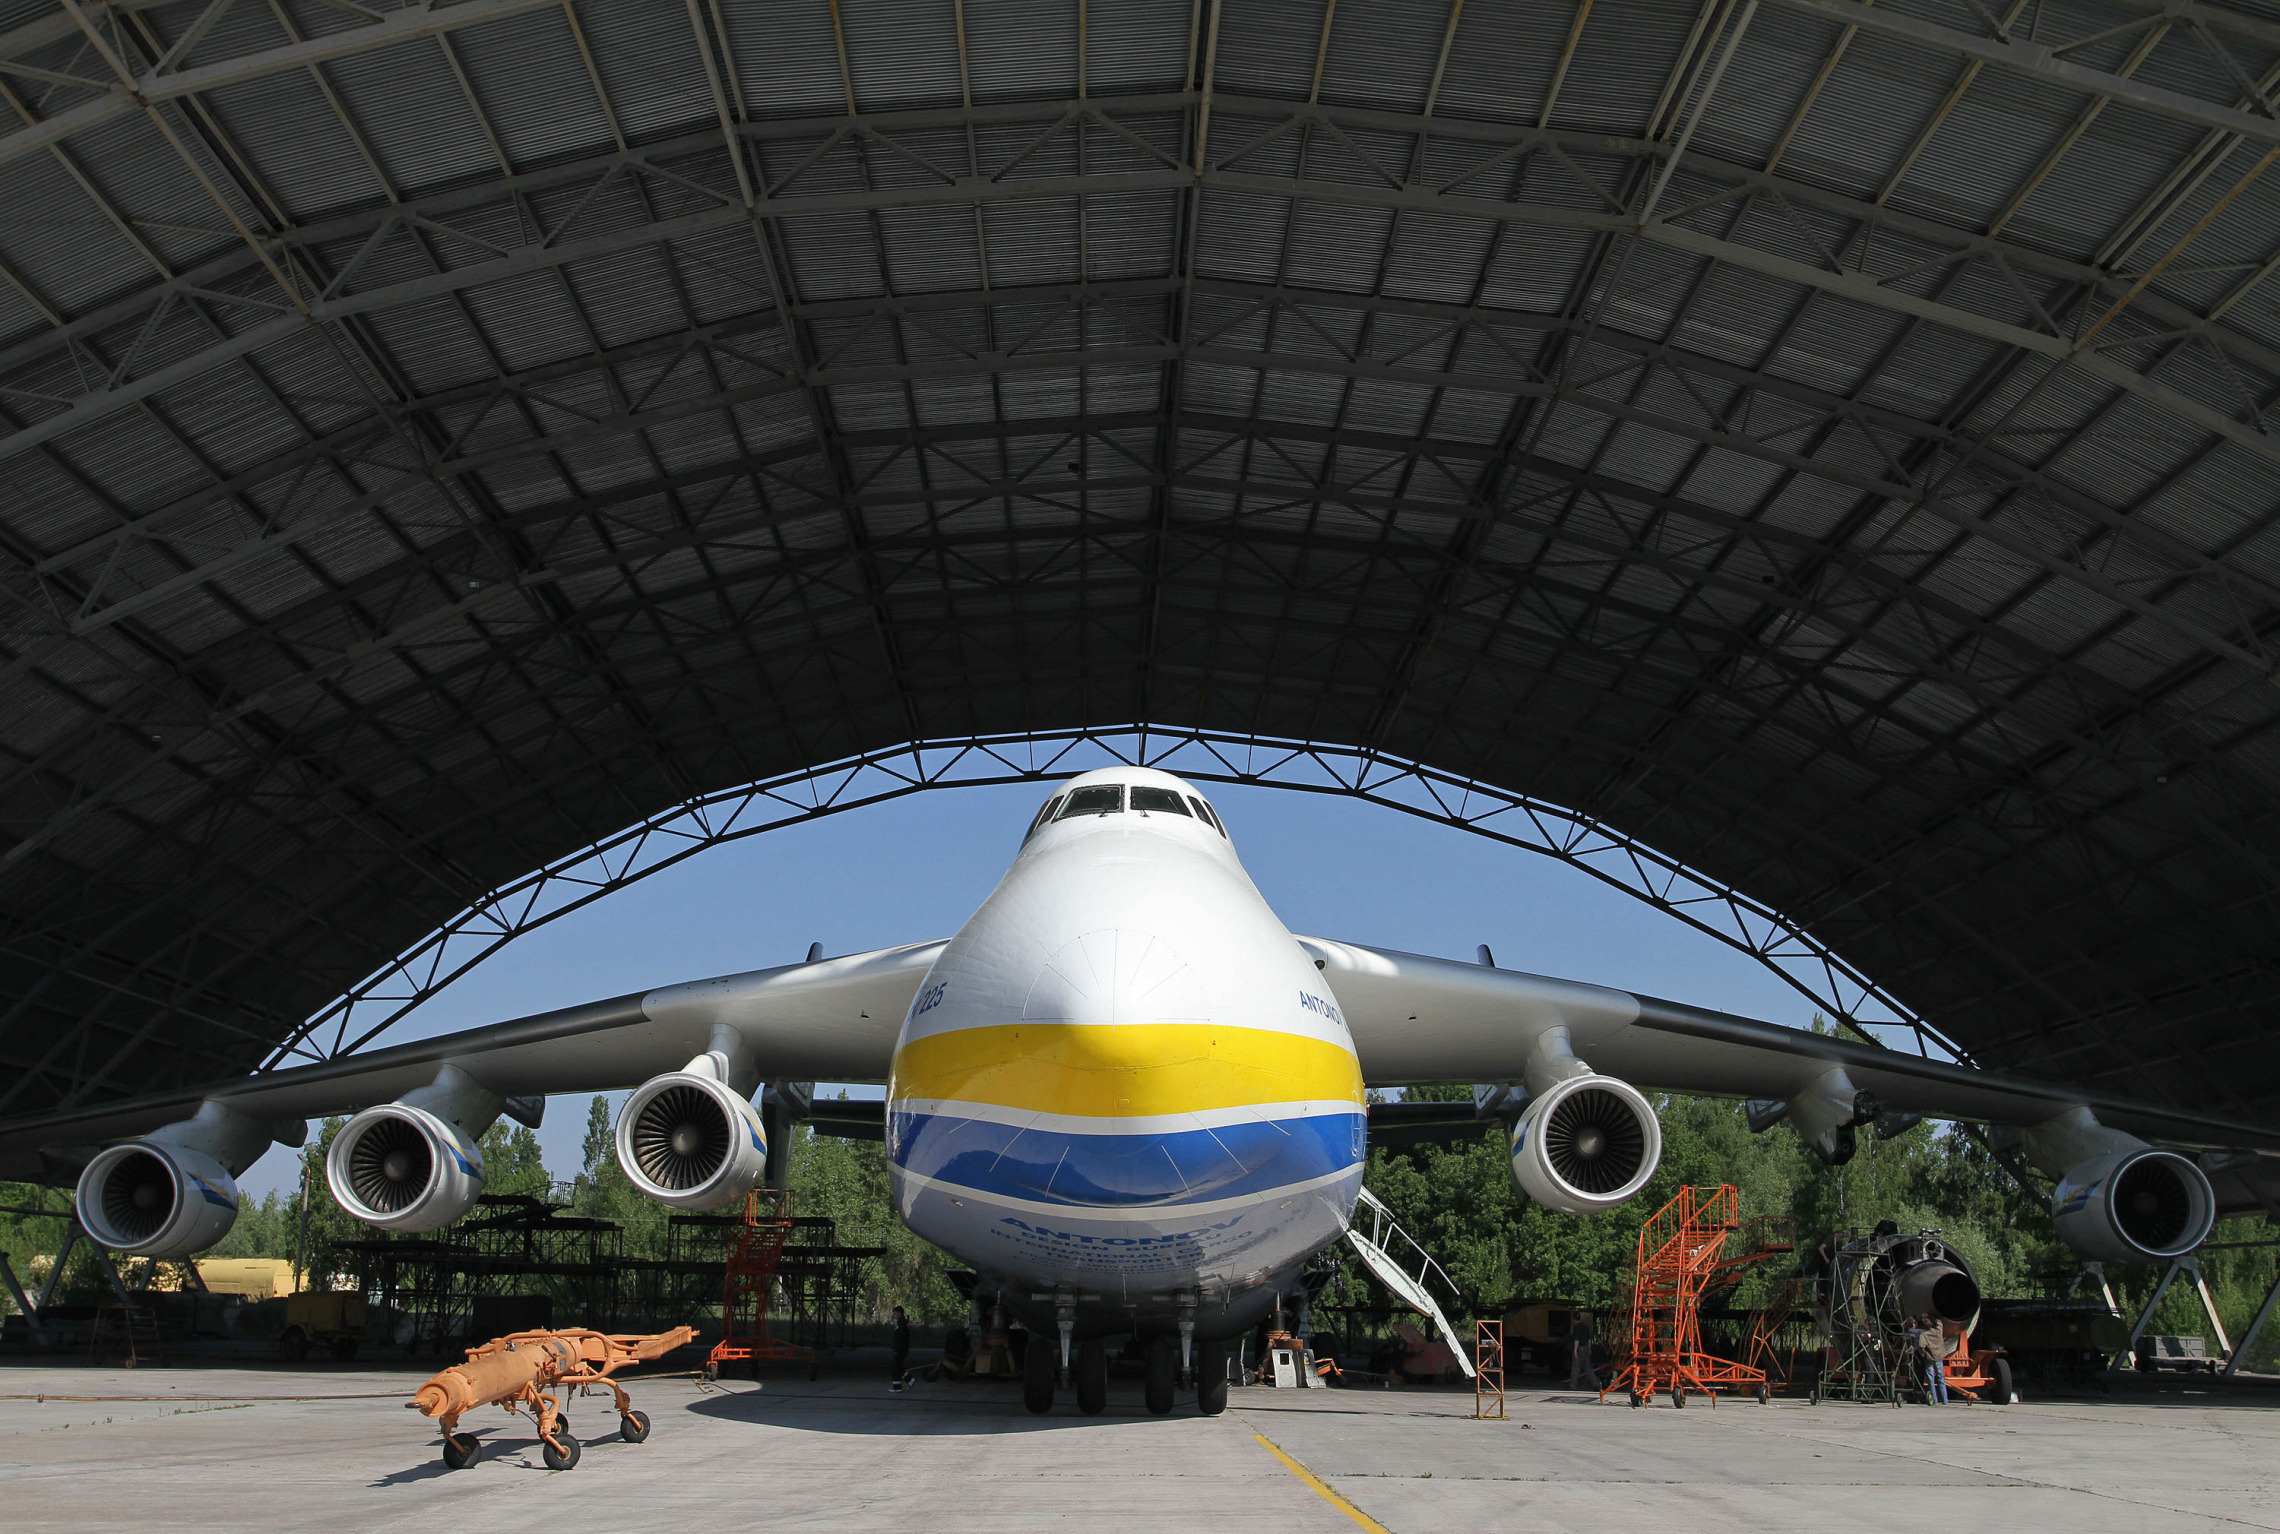 The Antonov-225 cargo aircraft.